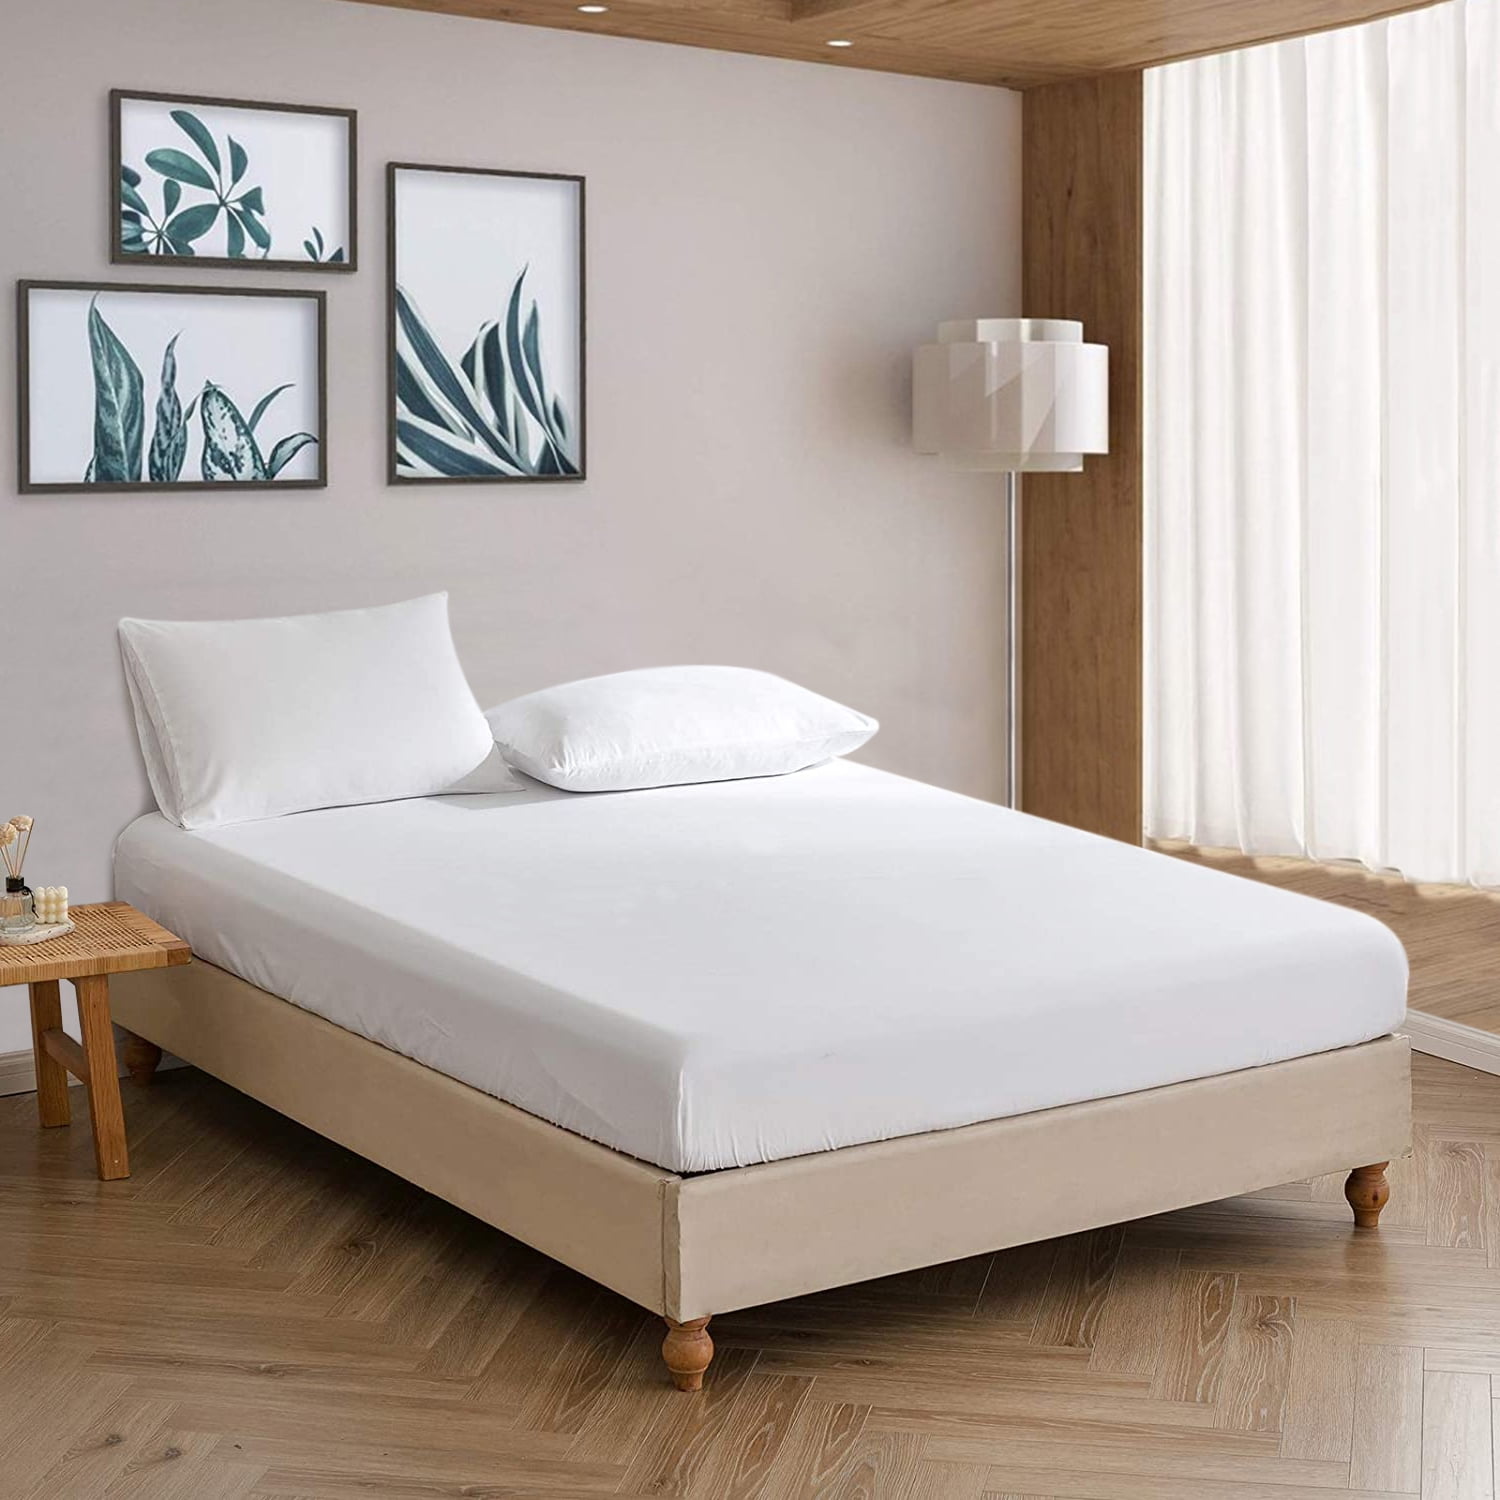 Amos 100% Algodón Cepillado flanelita plana bed sheet single Doble King 